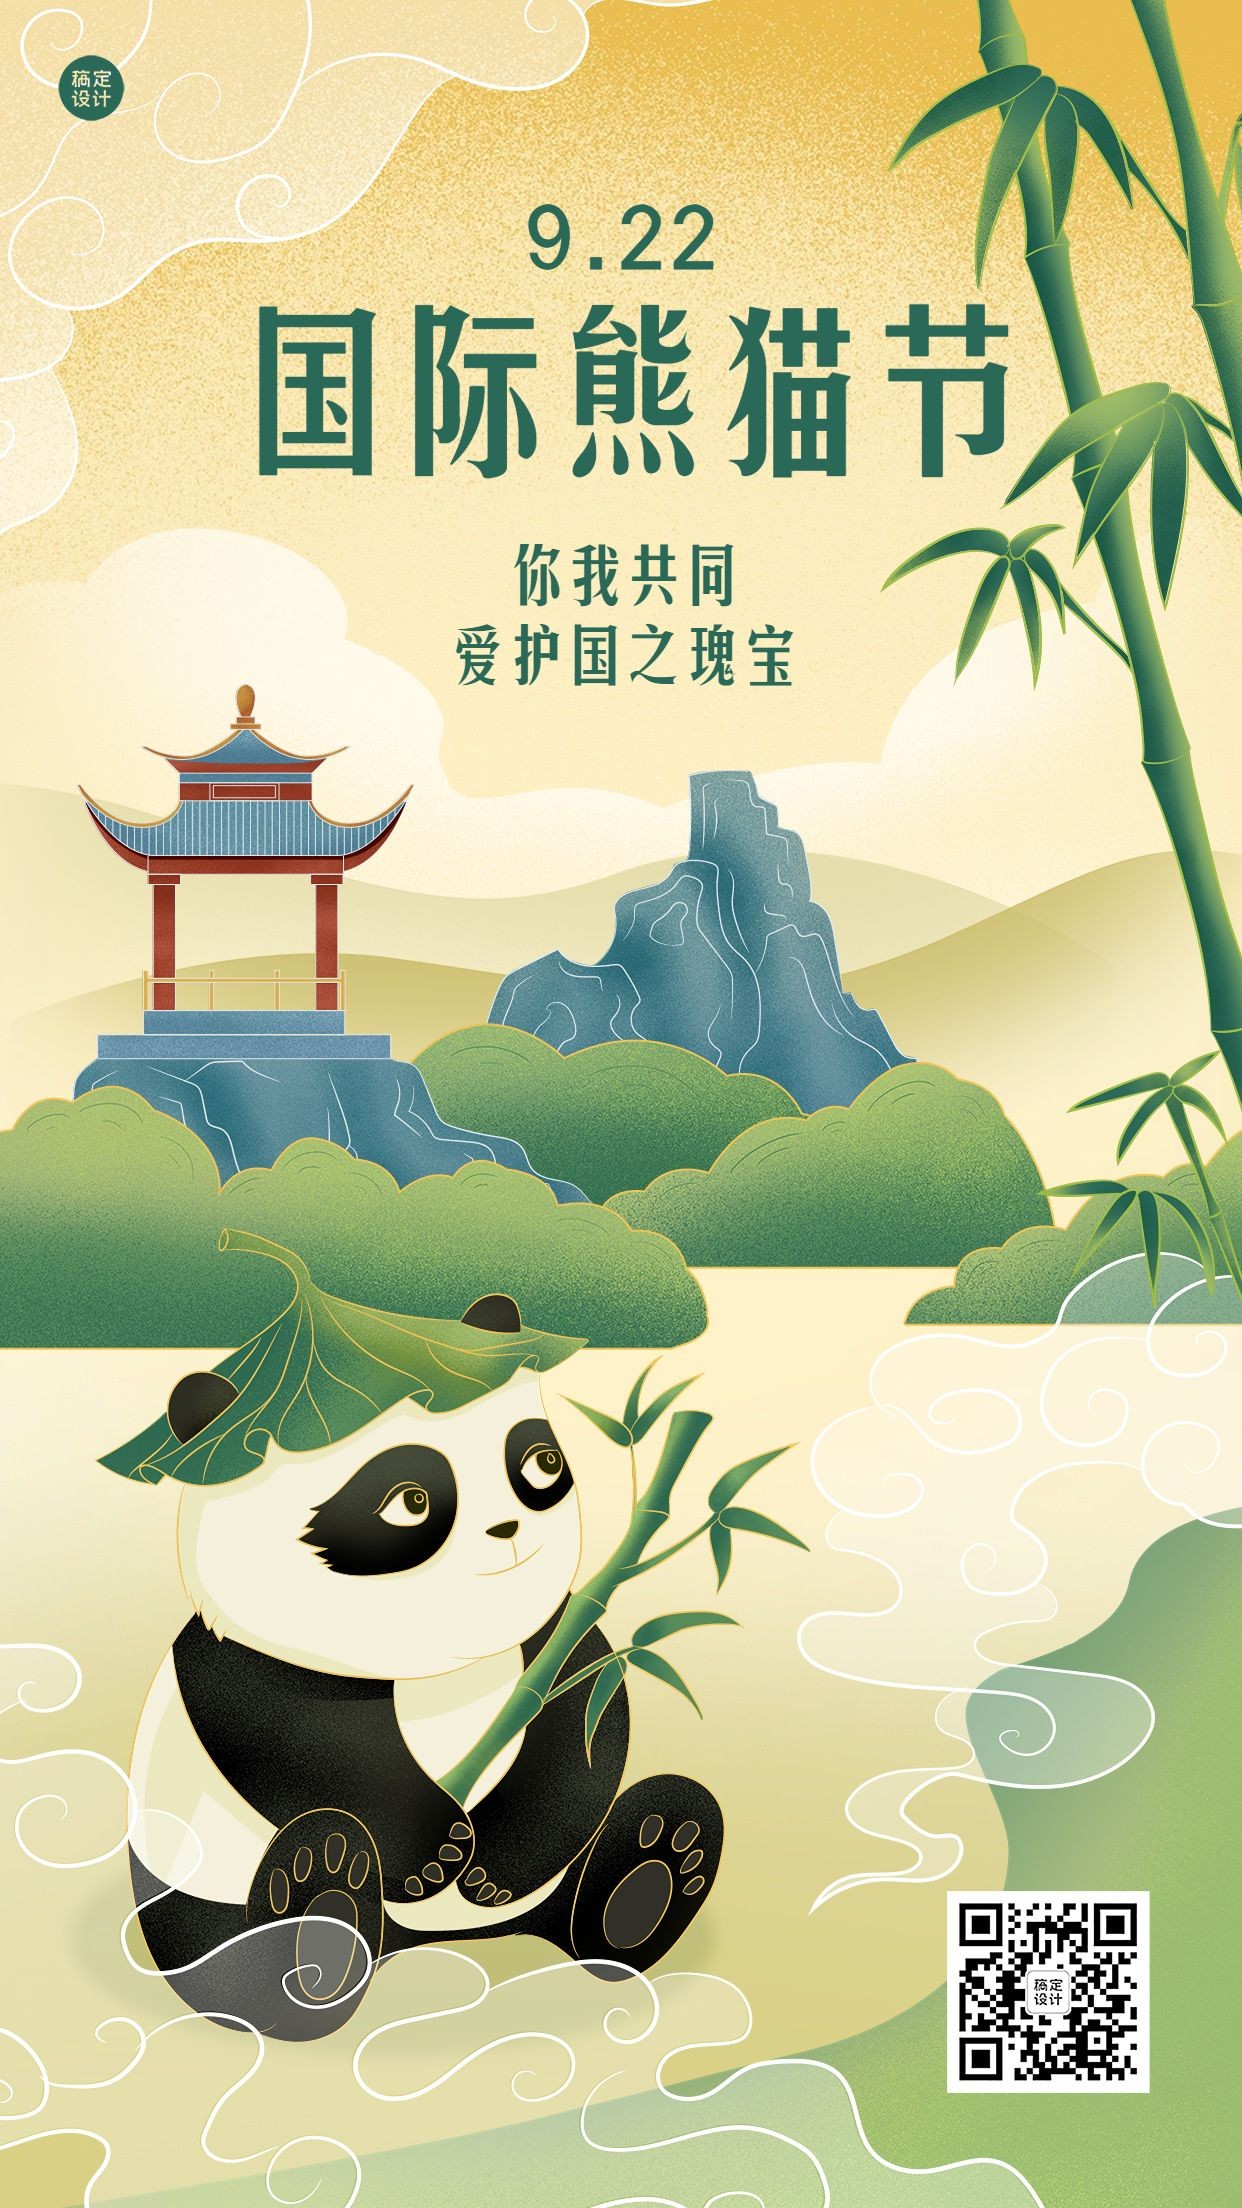 国际熊猫节节日宣传手绘插画手机海报熊猫